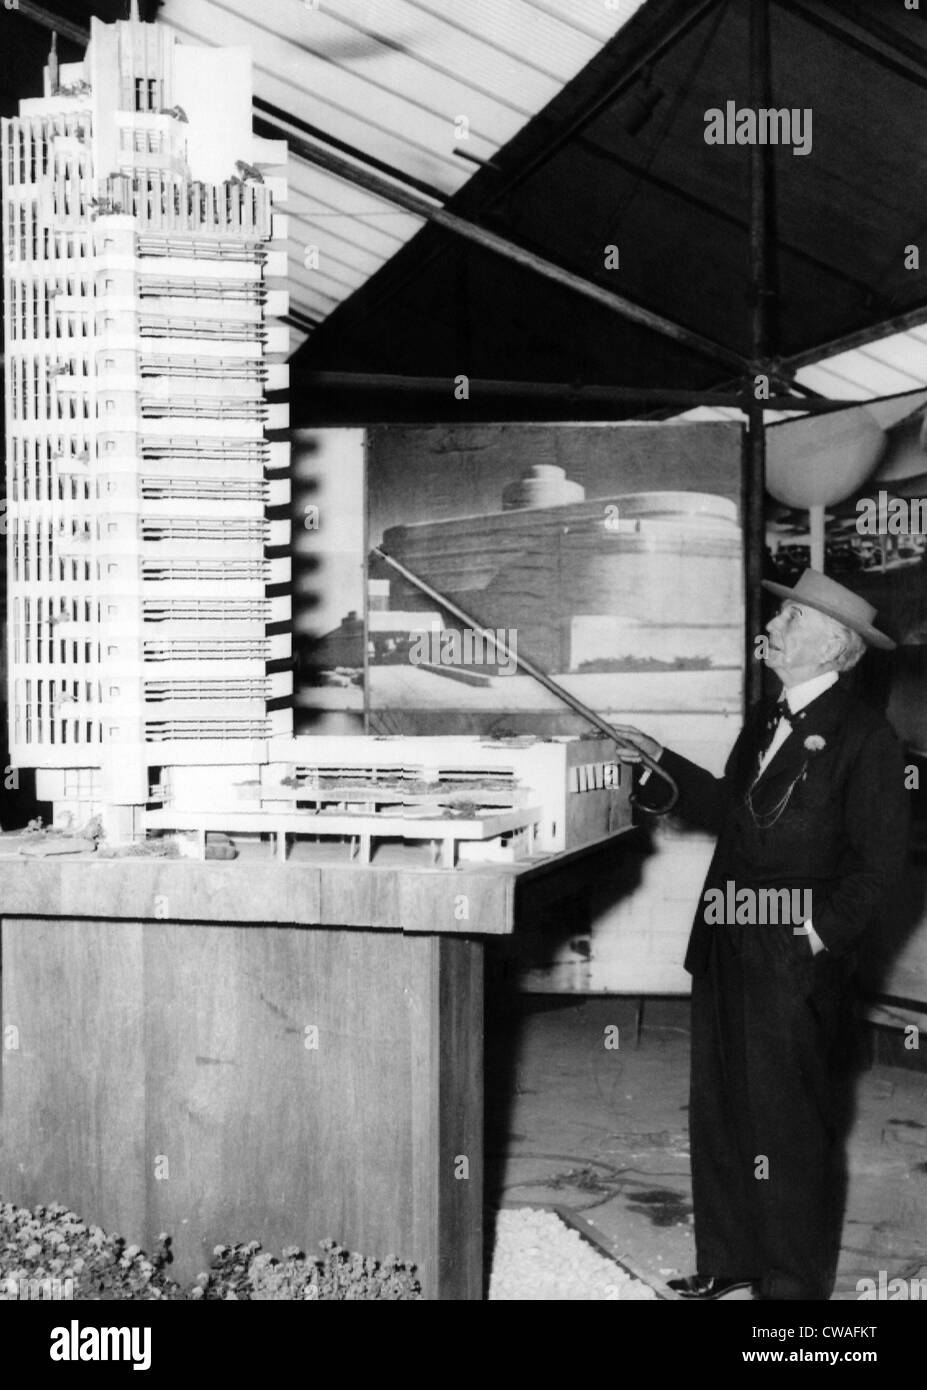 Amerikanischen Architekten Frank Lloyd Wright auf ein Modell des Turms in Oklahoma City, Preis 1953... Höflichkeit: CSU Archive / Stockfoto